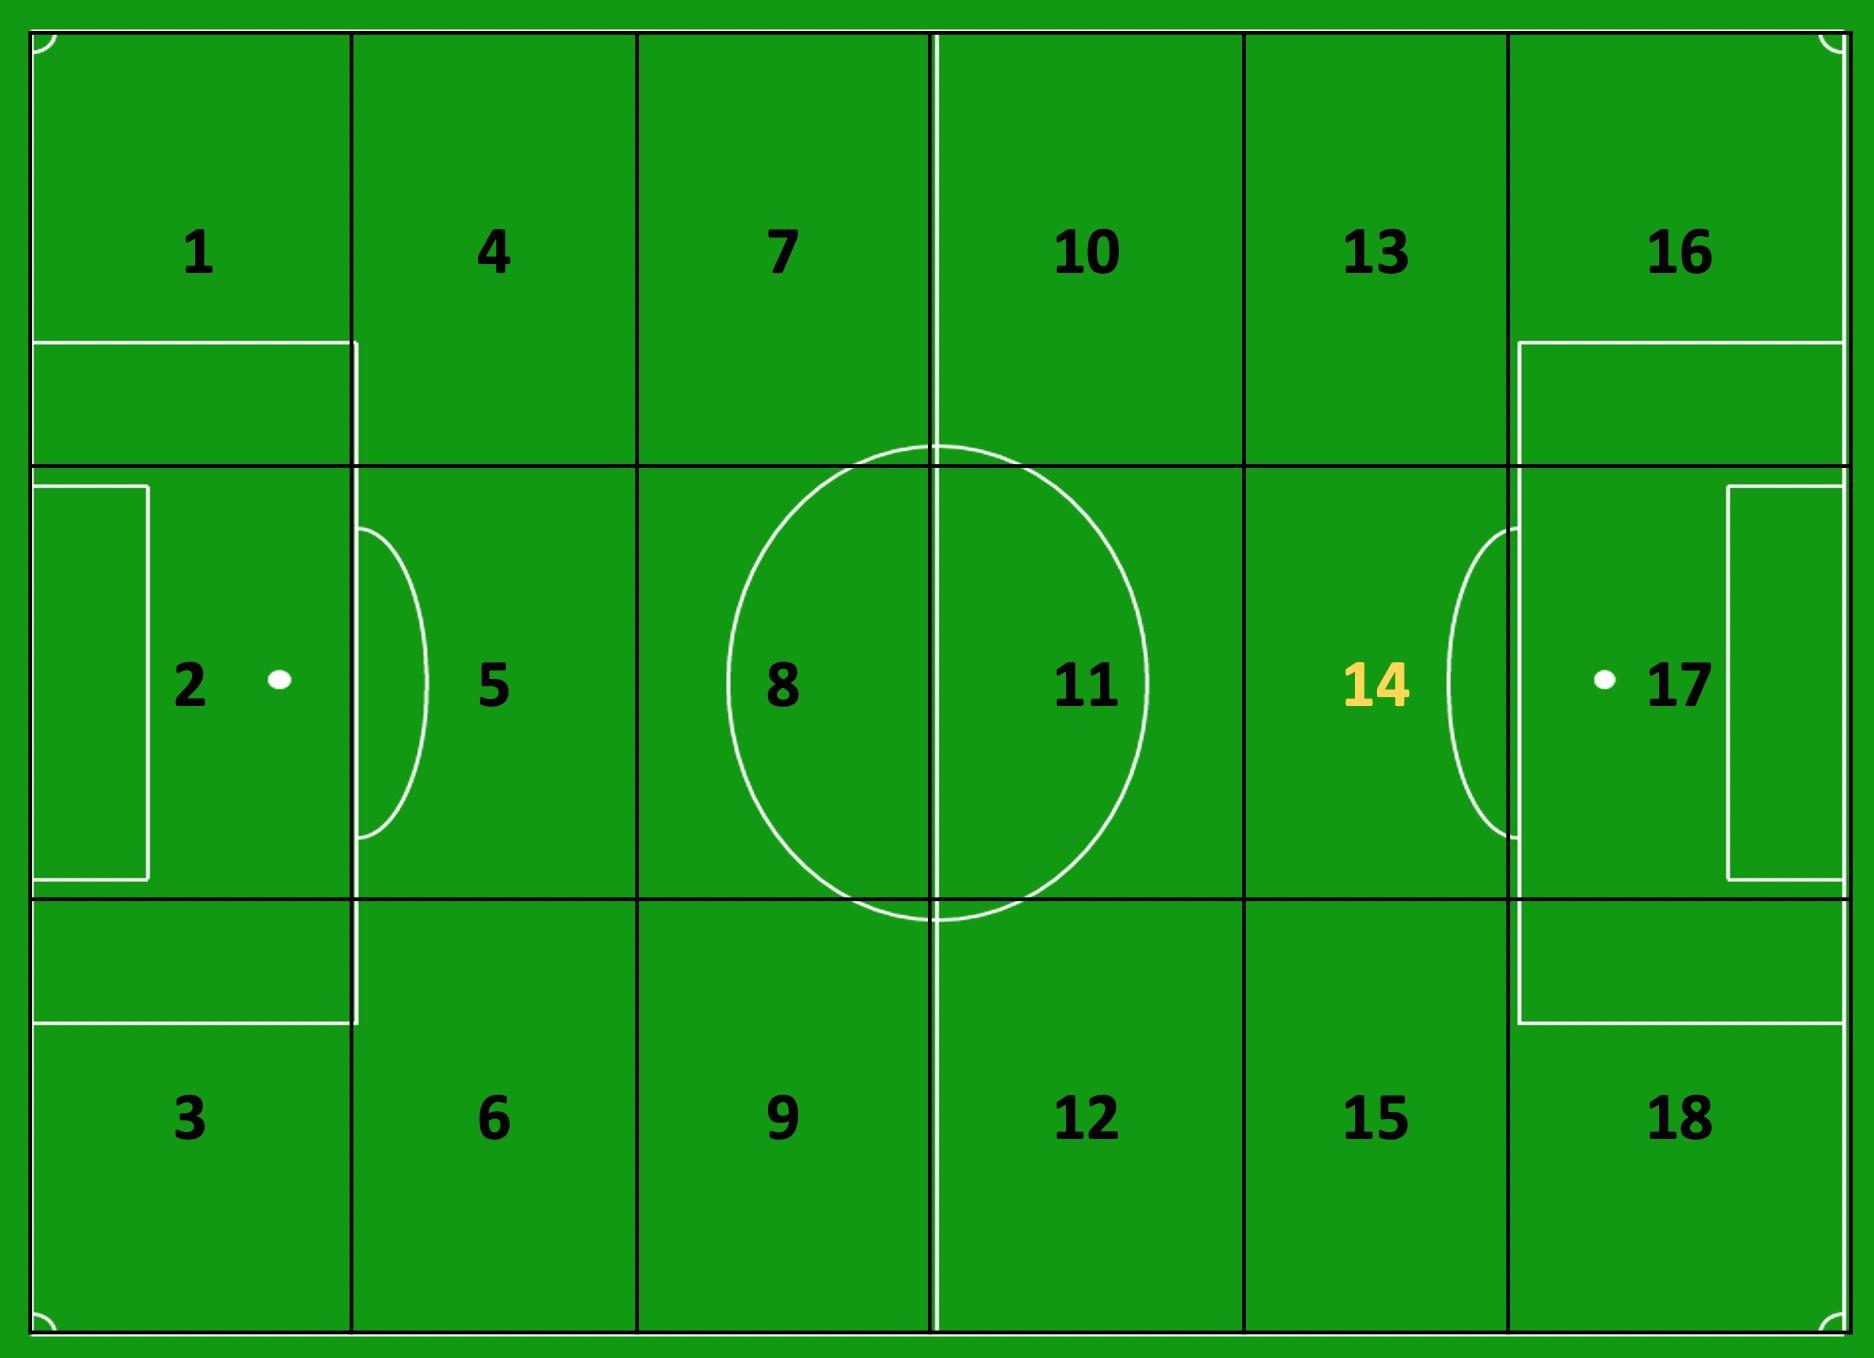 Een voetbalveld onderverdeeld in 18 zones, met de 'gouden zone' 14.